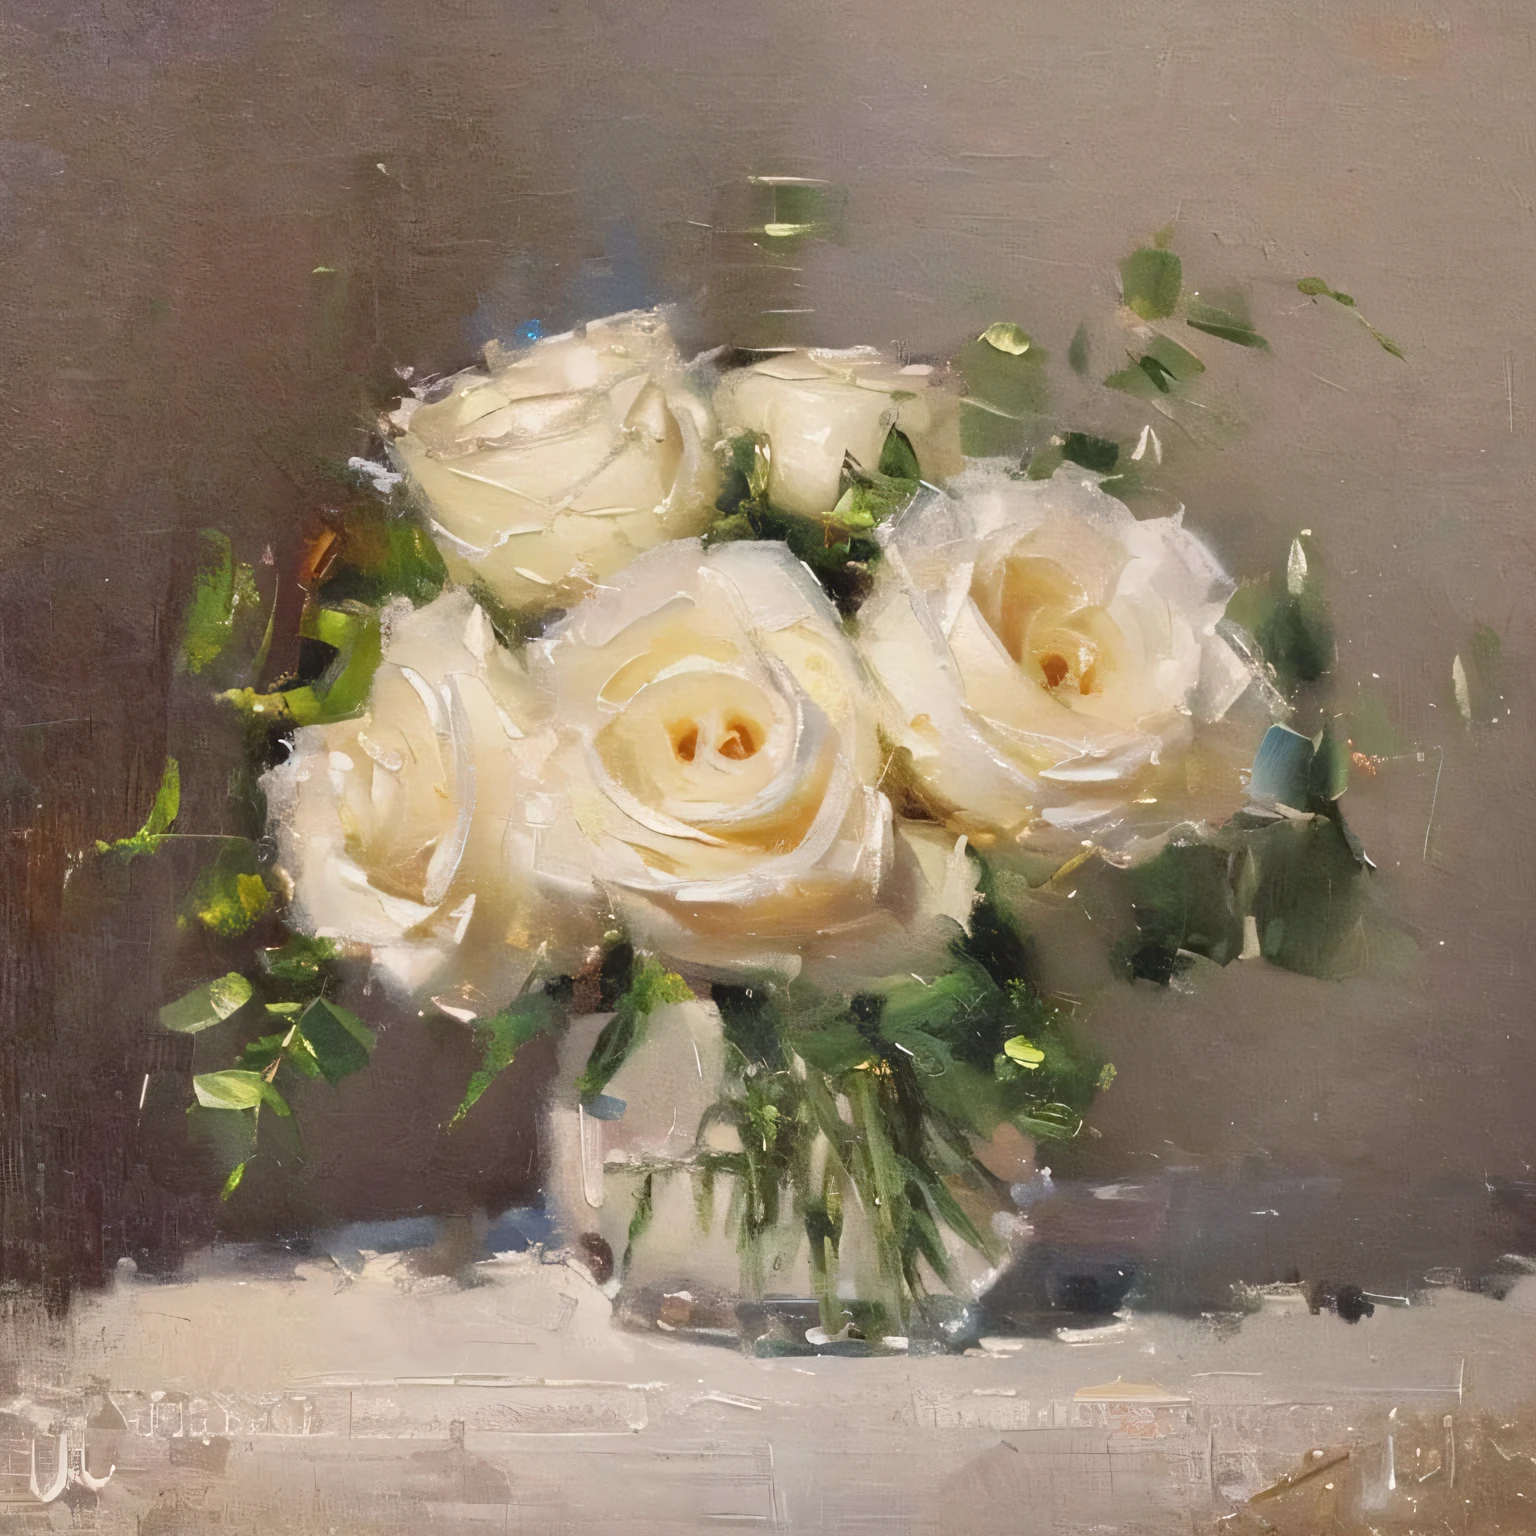 (杰作, 最好的质量, 高分辨率, 极其详细:1.2), 简单的背景, 静物, 三分法则, 瓷花瓶中的白玫瑰的复古油画